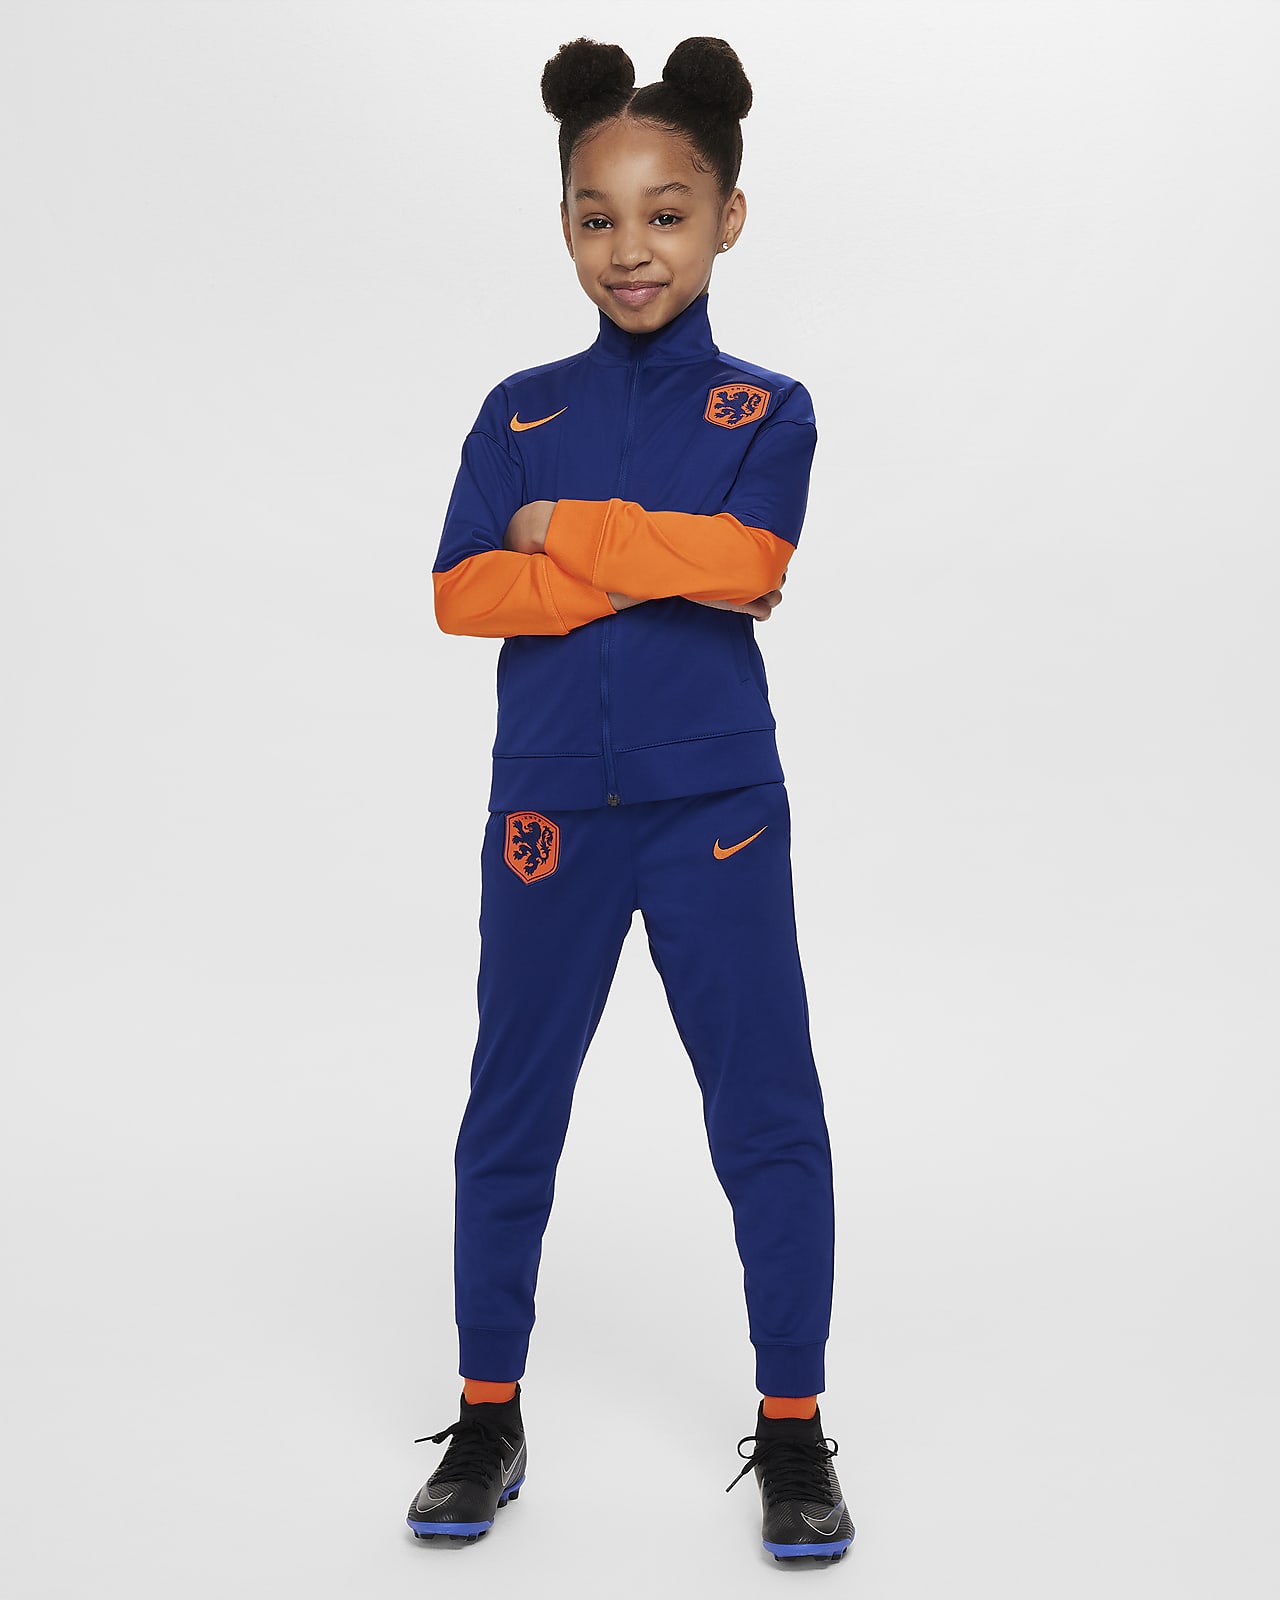 Hollandia Strike Nike Dri-FIT kötött futballtréningruha gyerekeknek